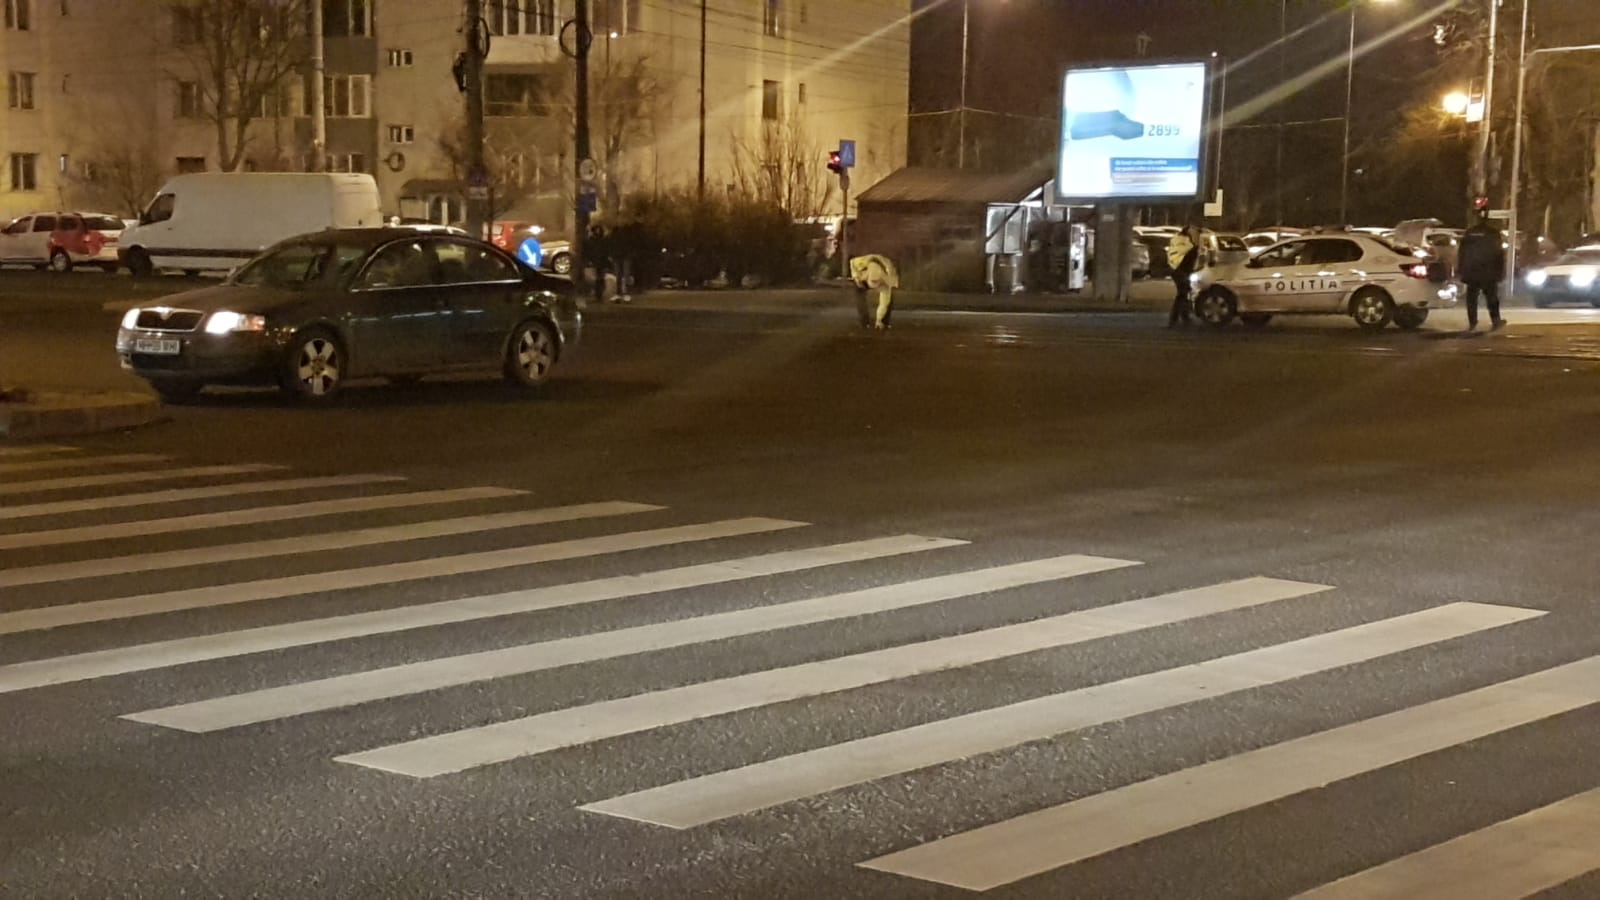 Echipaj de poliție implicat într-un accident de circulație, la Timișoara